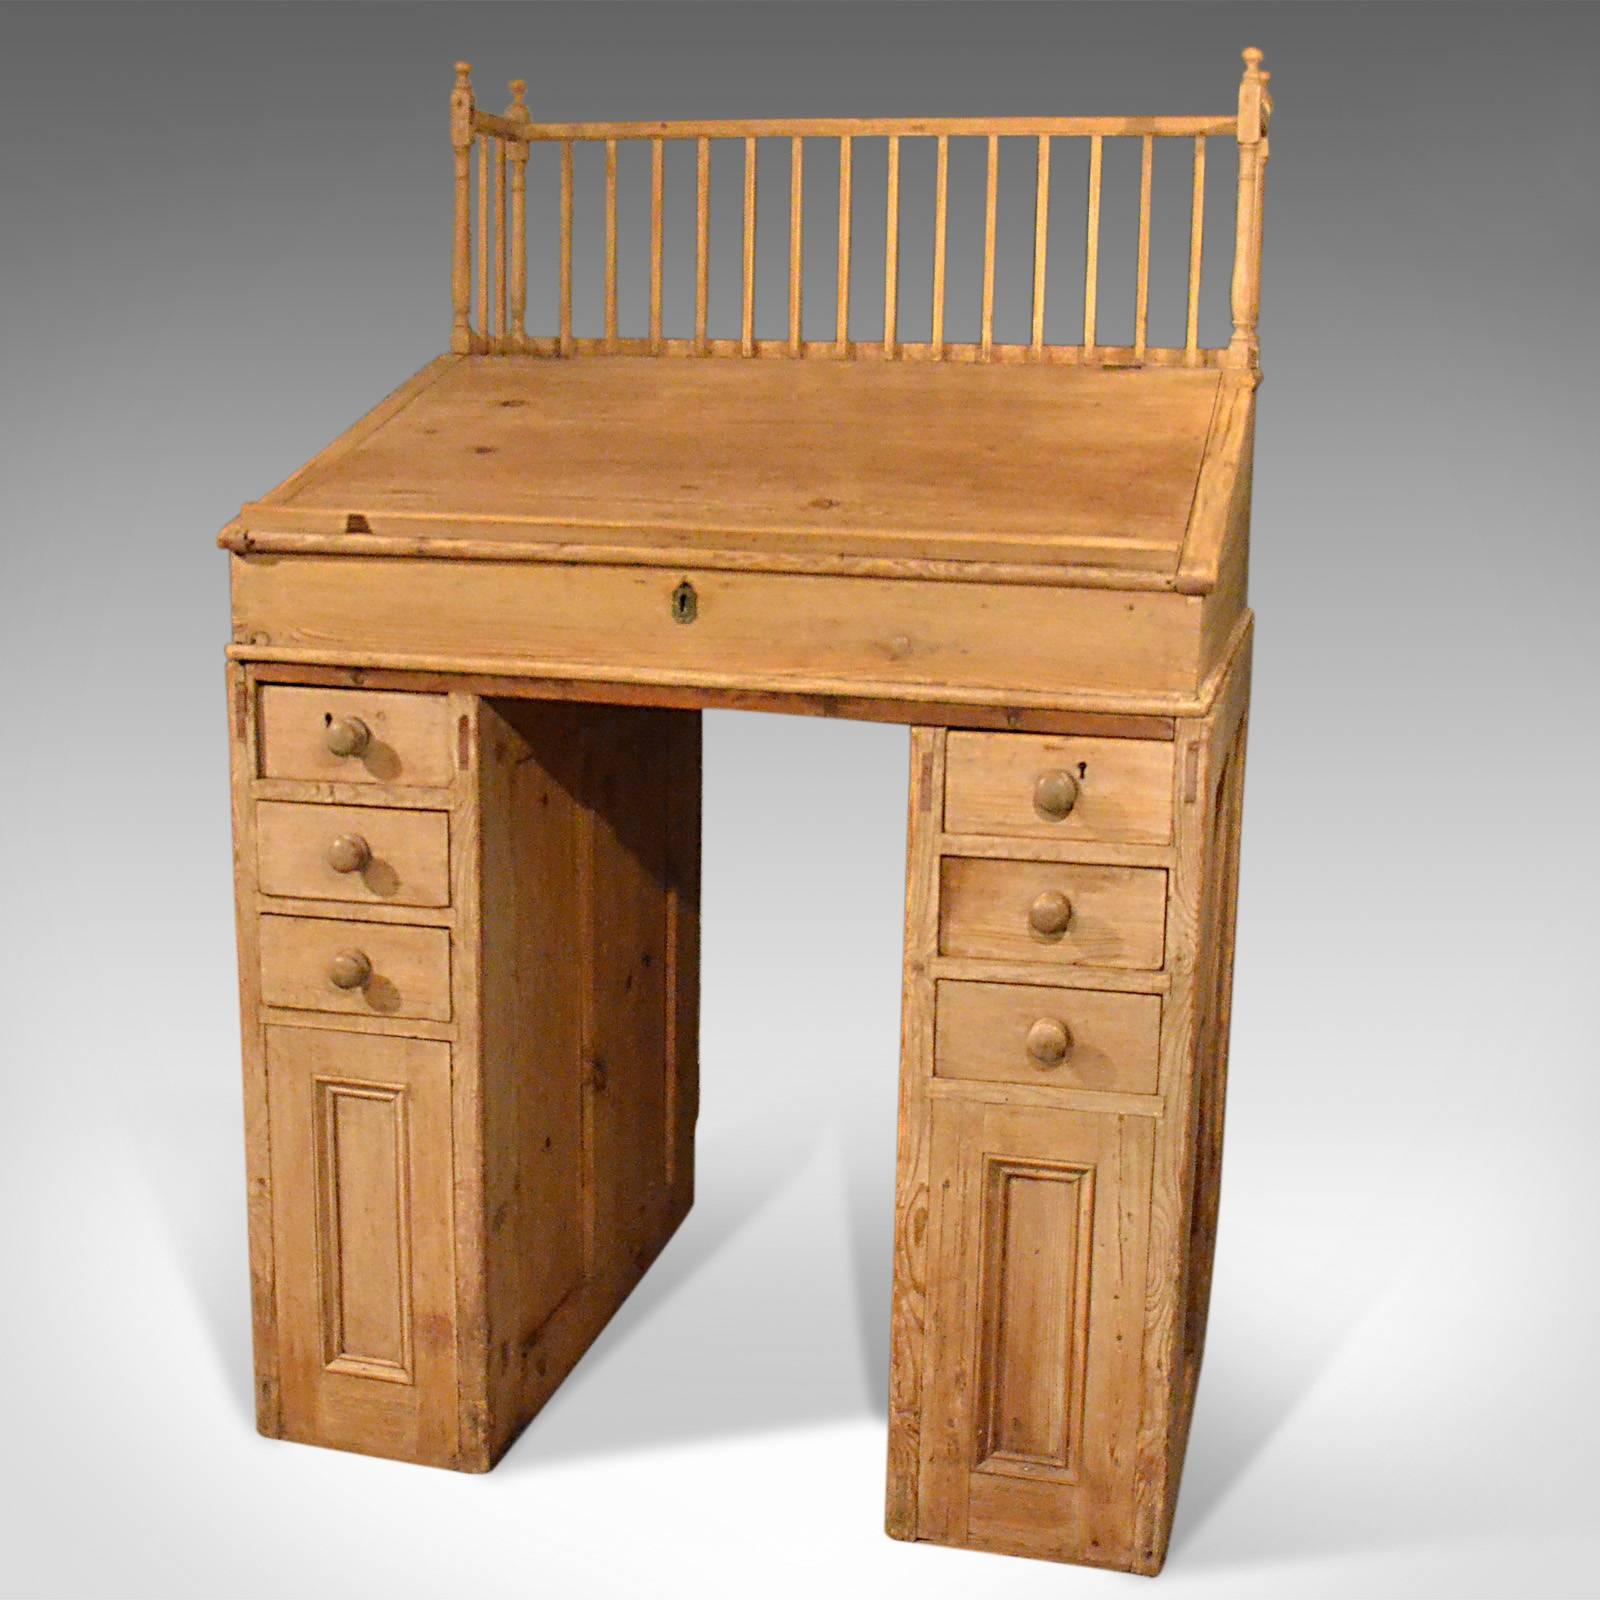 pine bureau with drawers